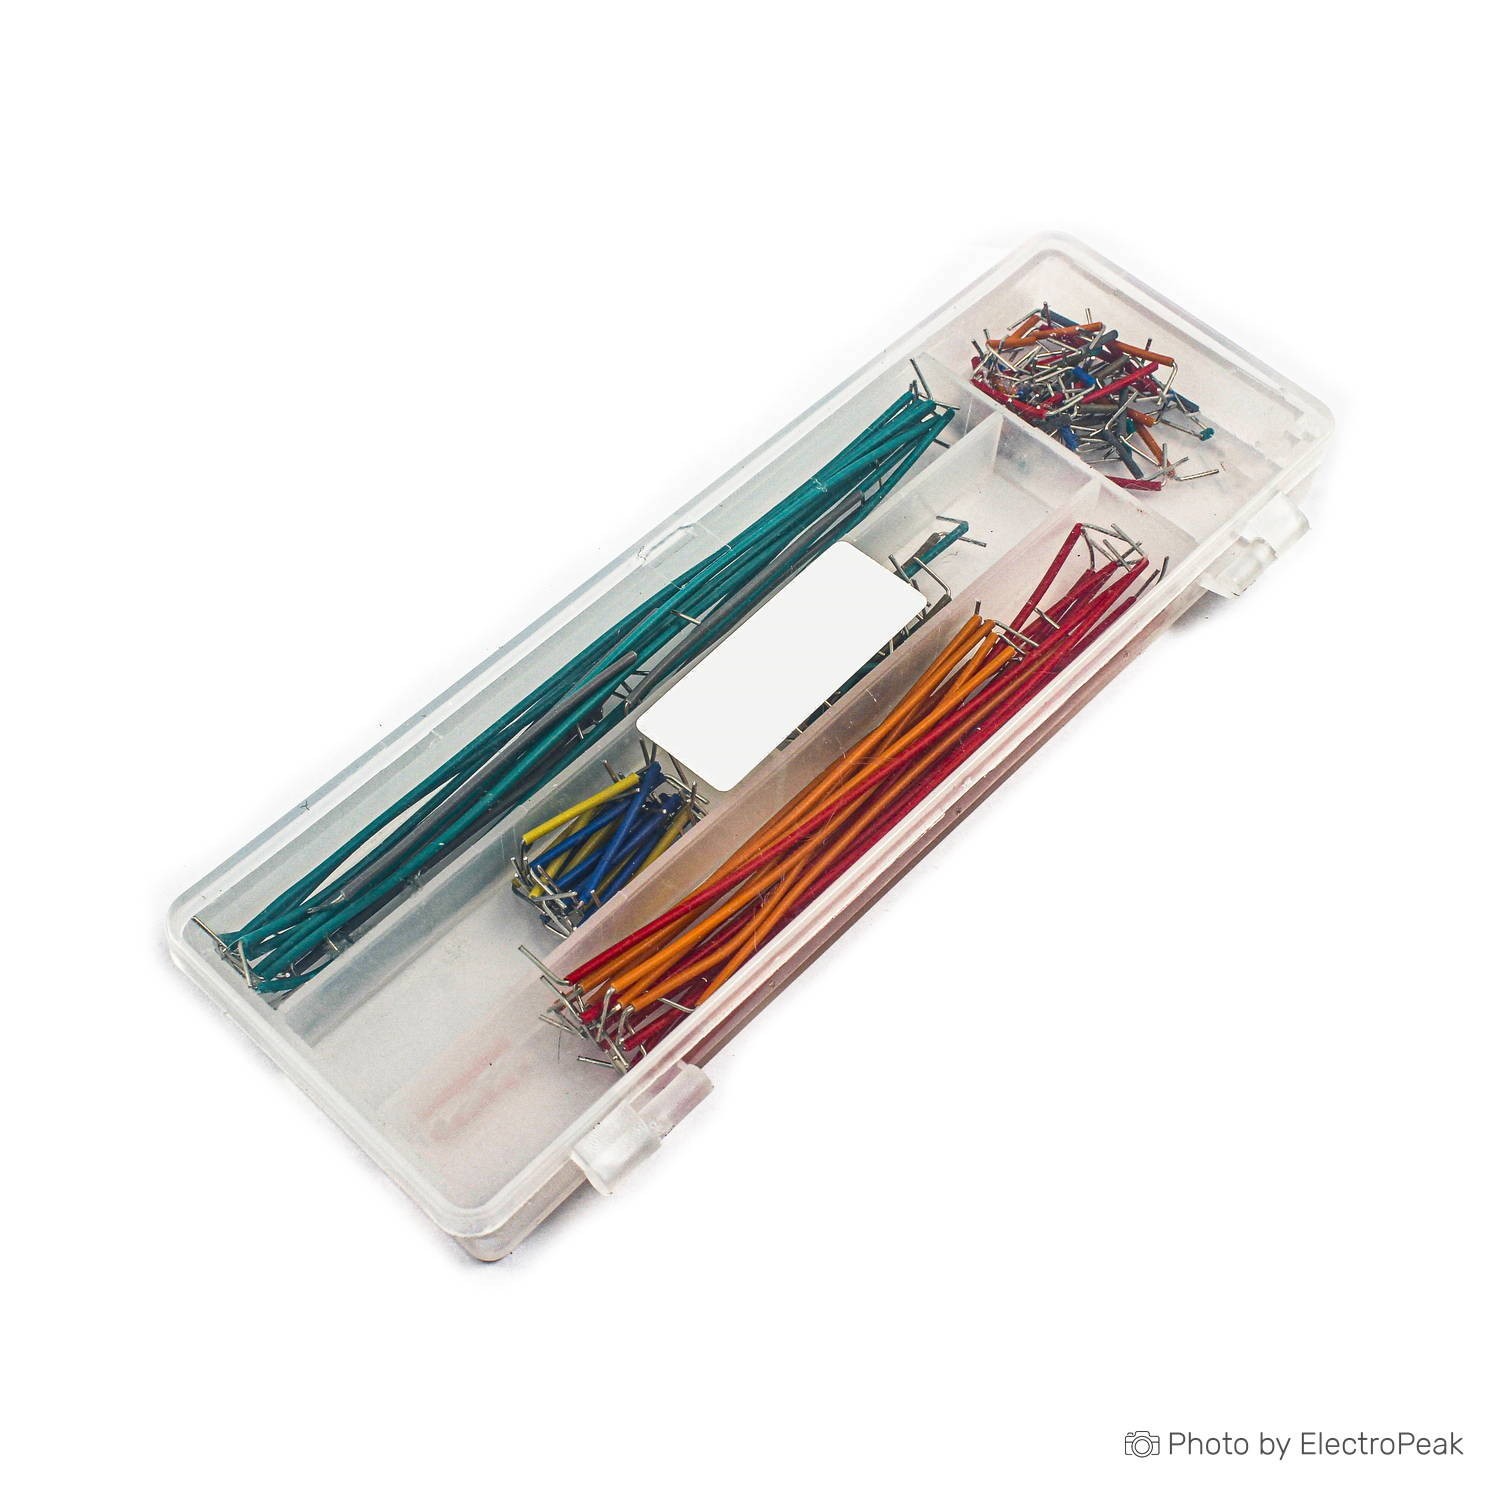 Breadboard Jumper Wire Kit - 140 Pieces - ElectroPeak